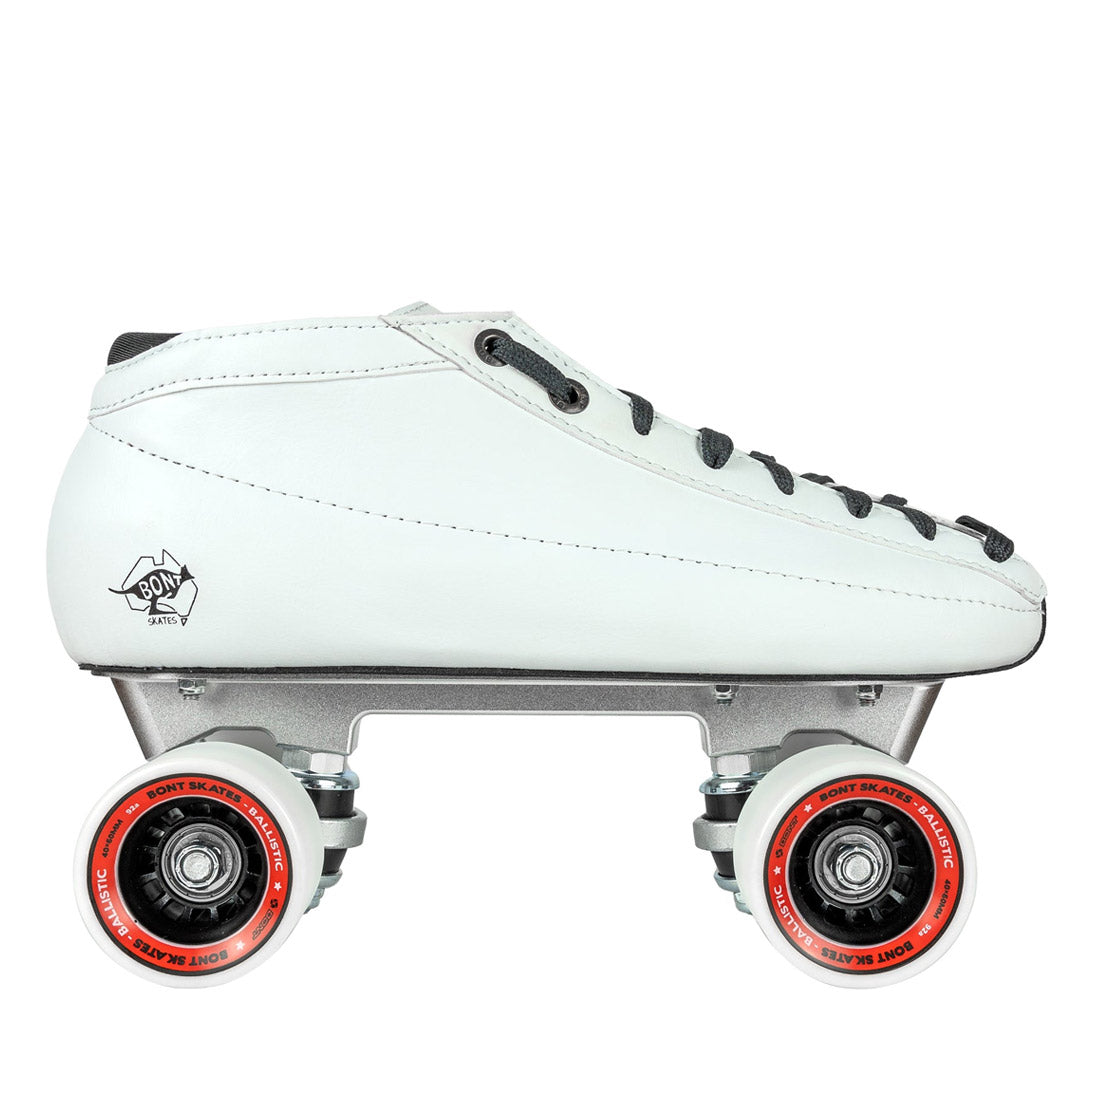 Bont Racer Tracer Ballistic Package - White Roller Skates